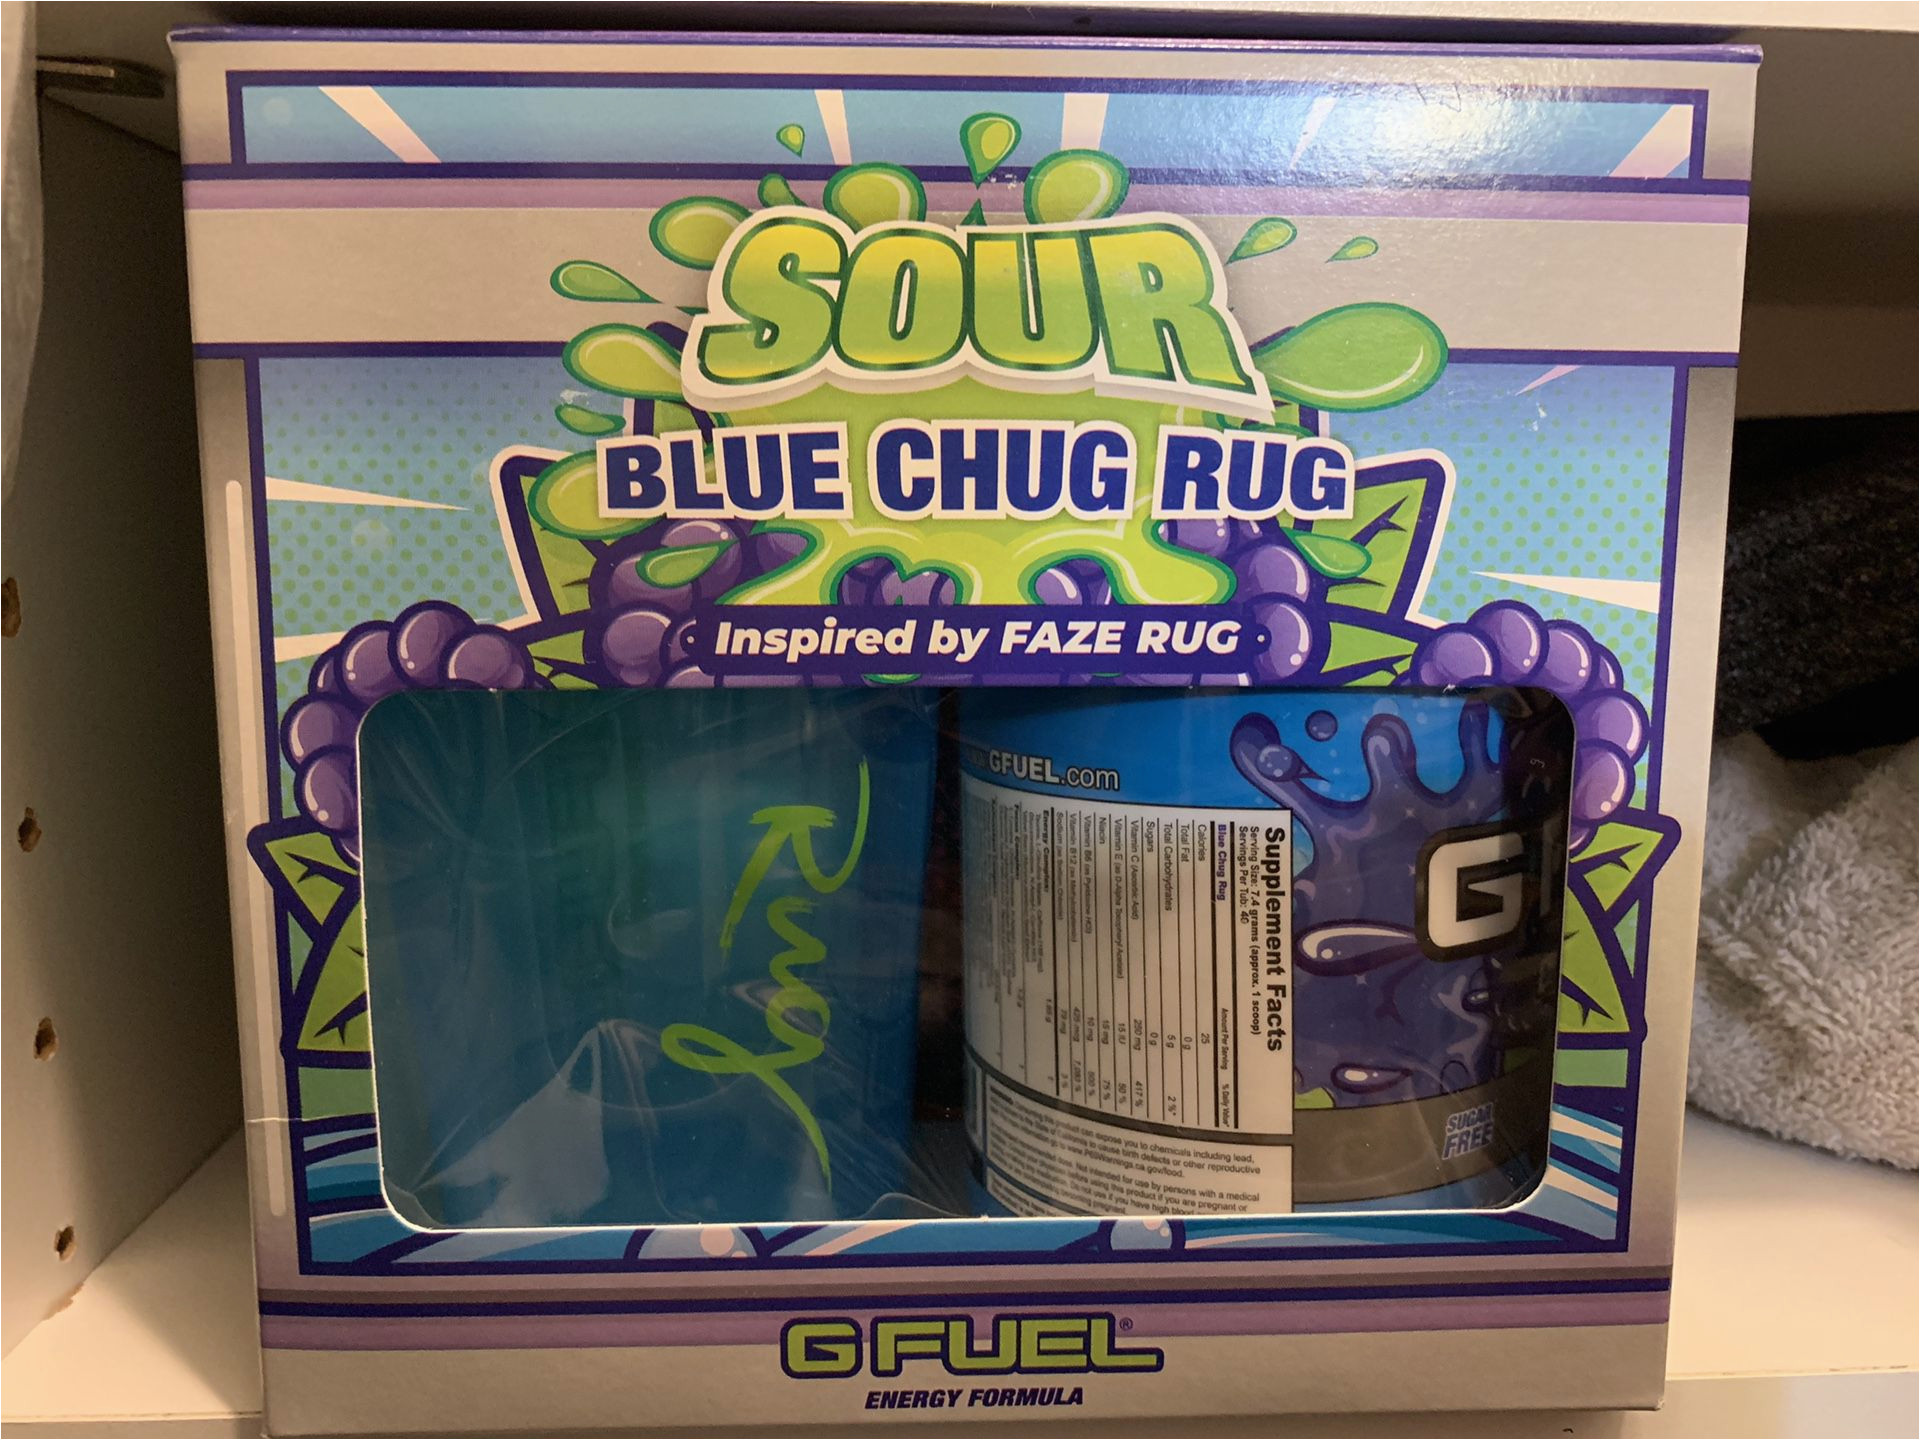 Sour Blue Chug Rug Collectors Box Gfuel sour Blue Chug Rug Collectors Box for Sale In Garden Grove …